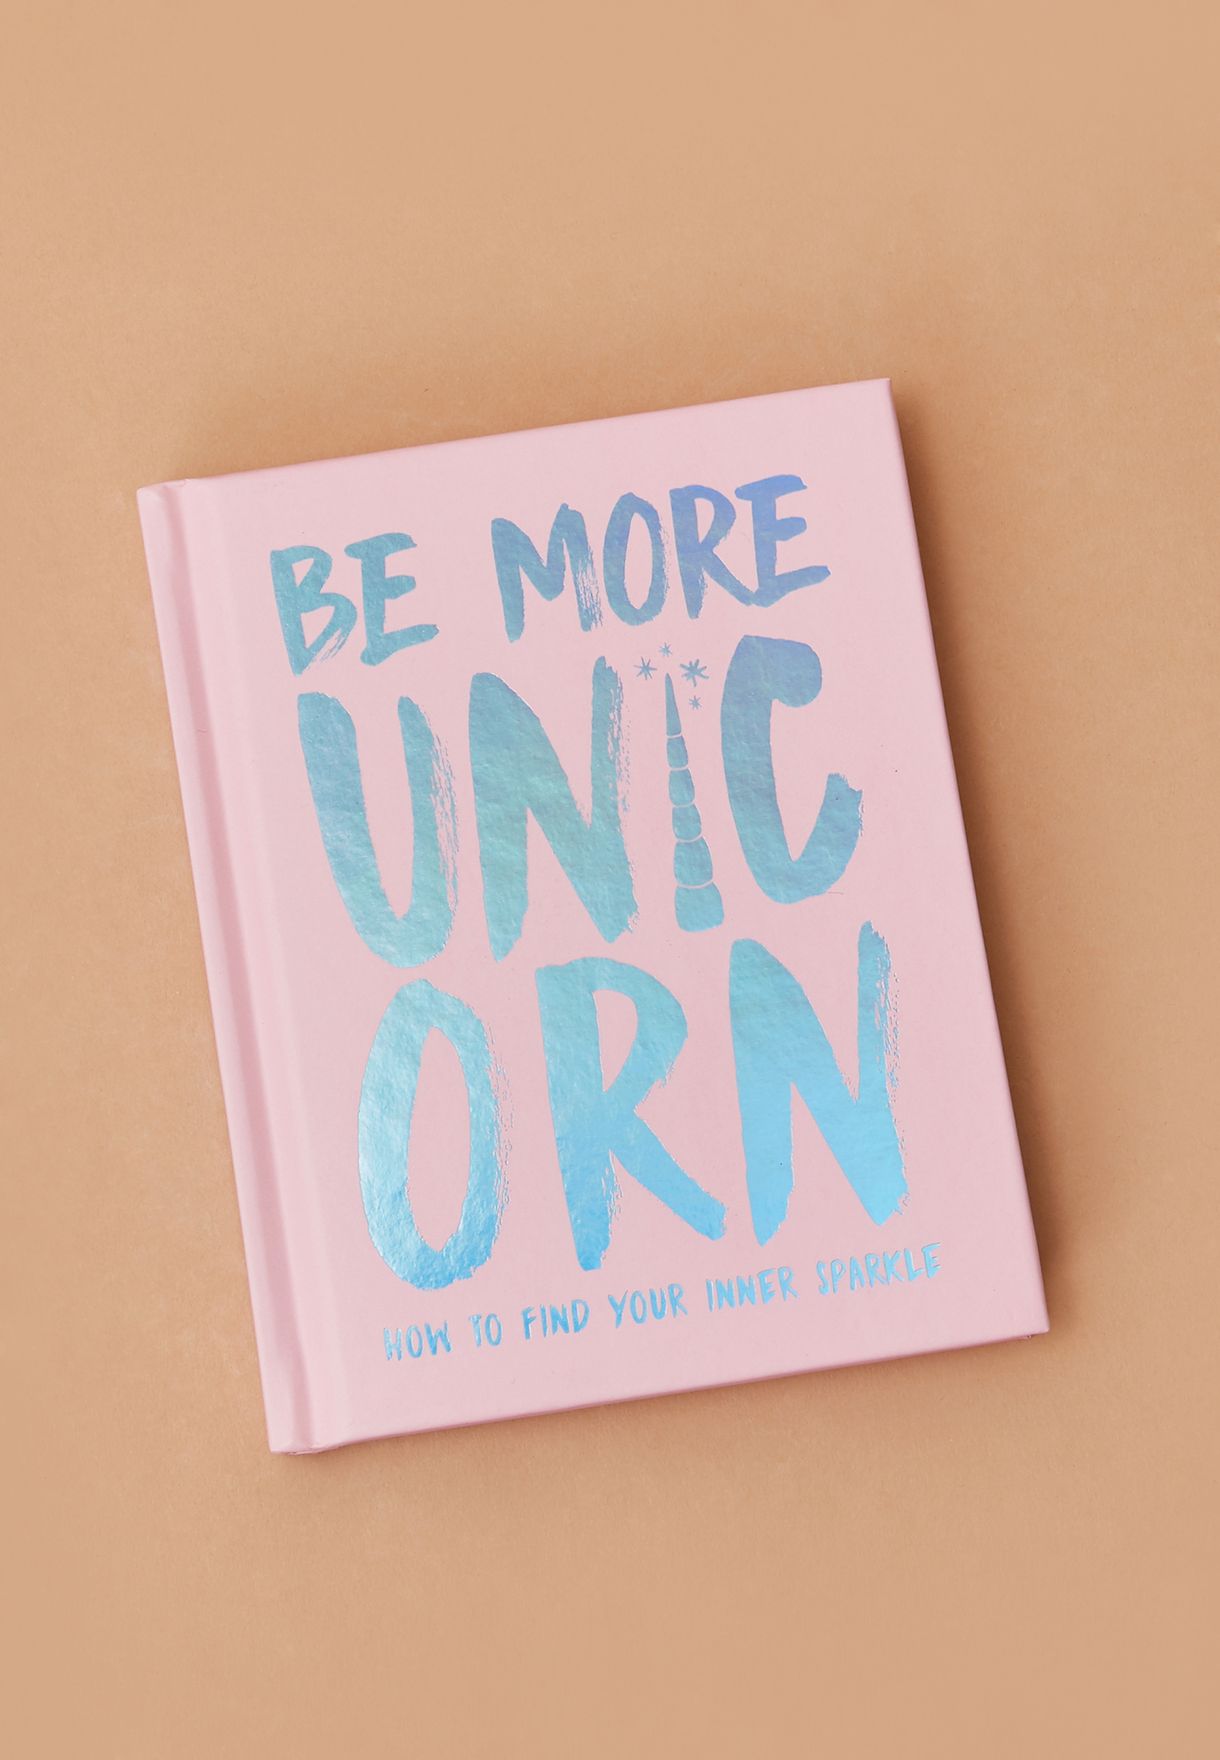 كتاب" Be More Unicorn" (كن احادي القرن اكثر)